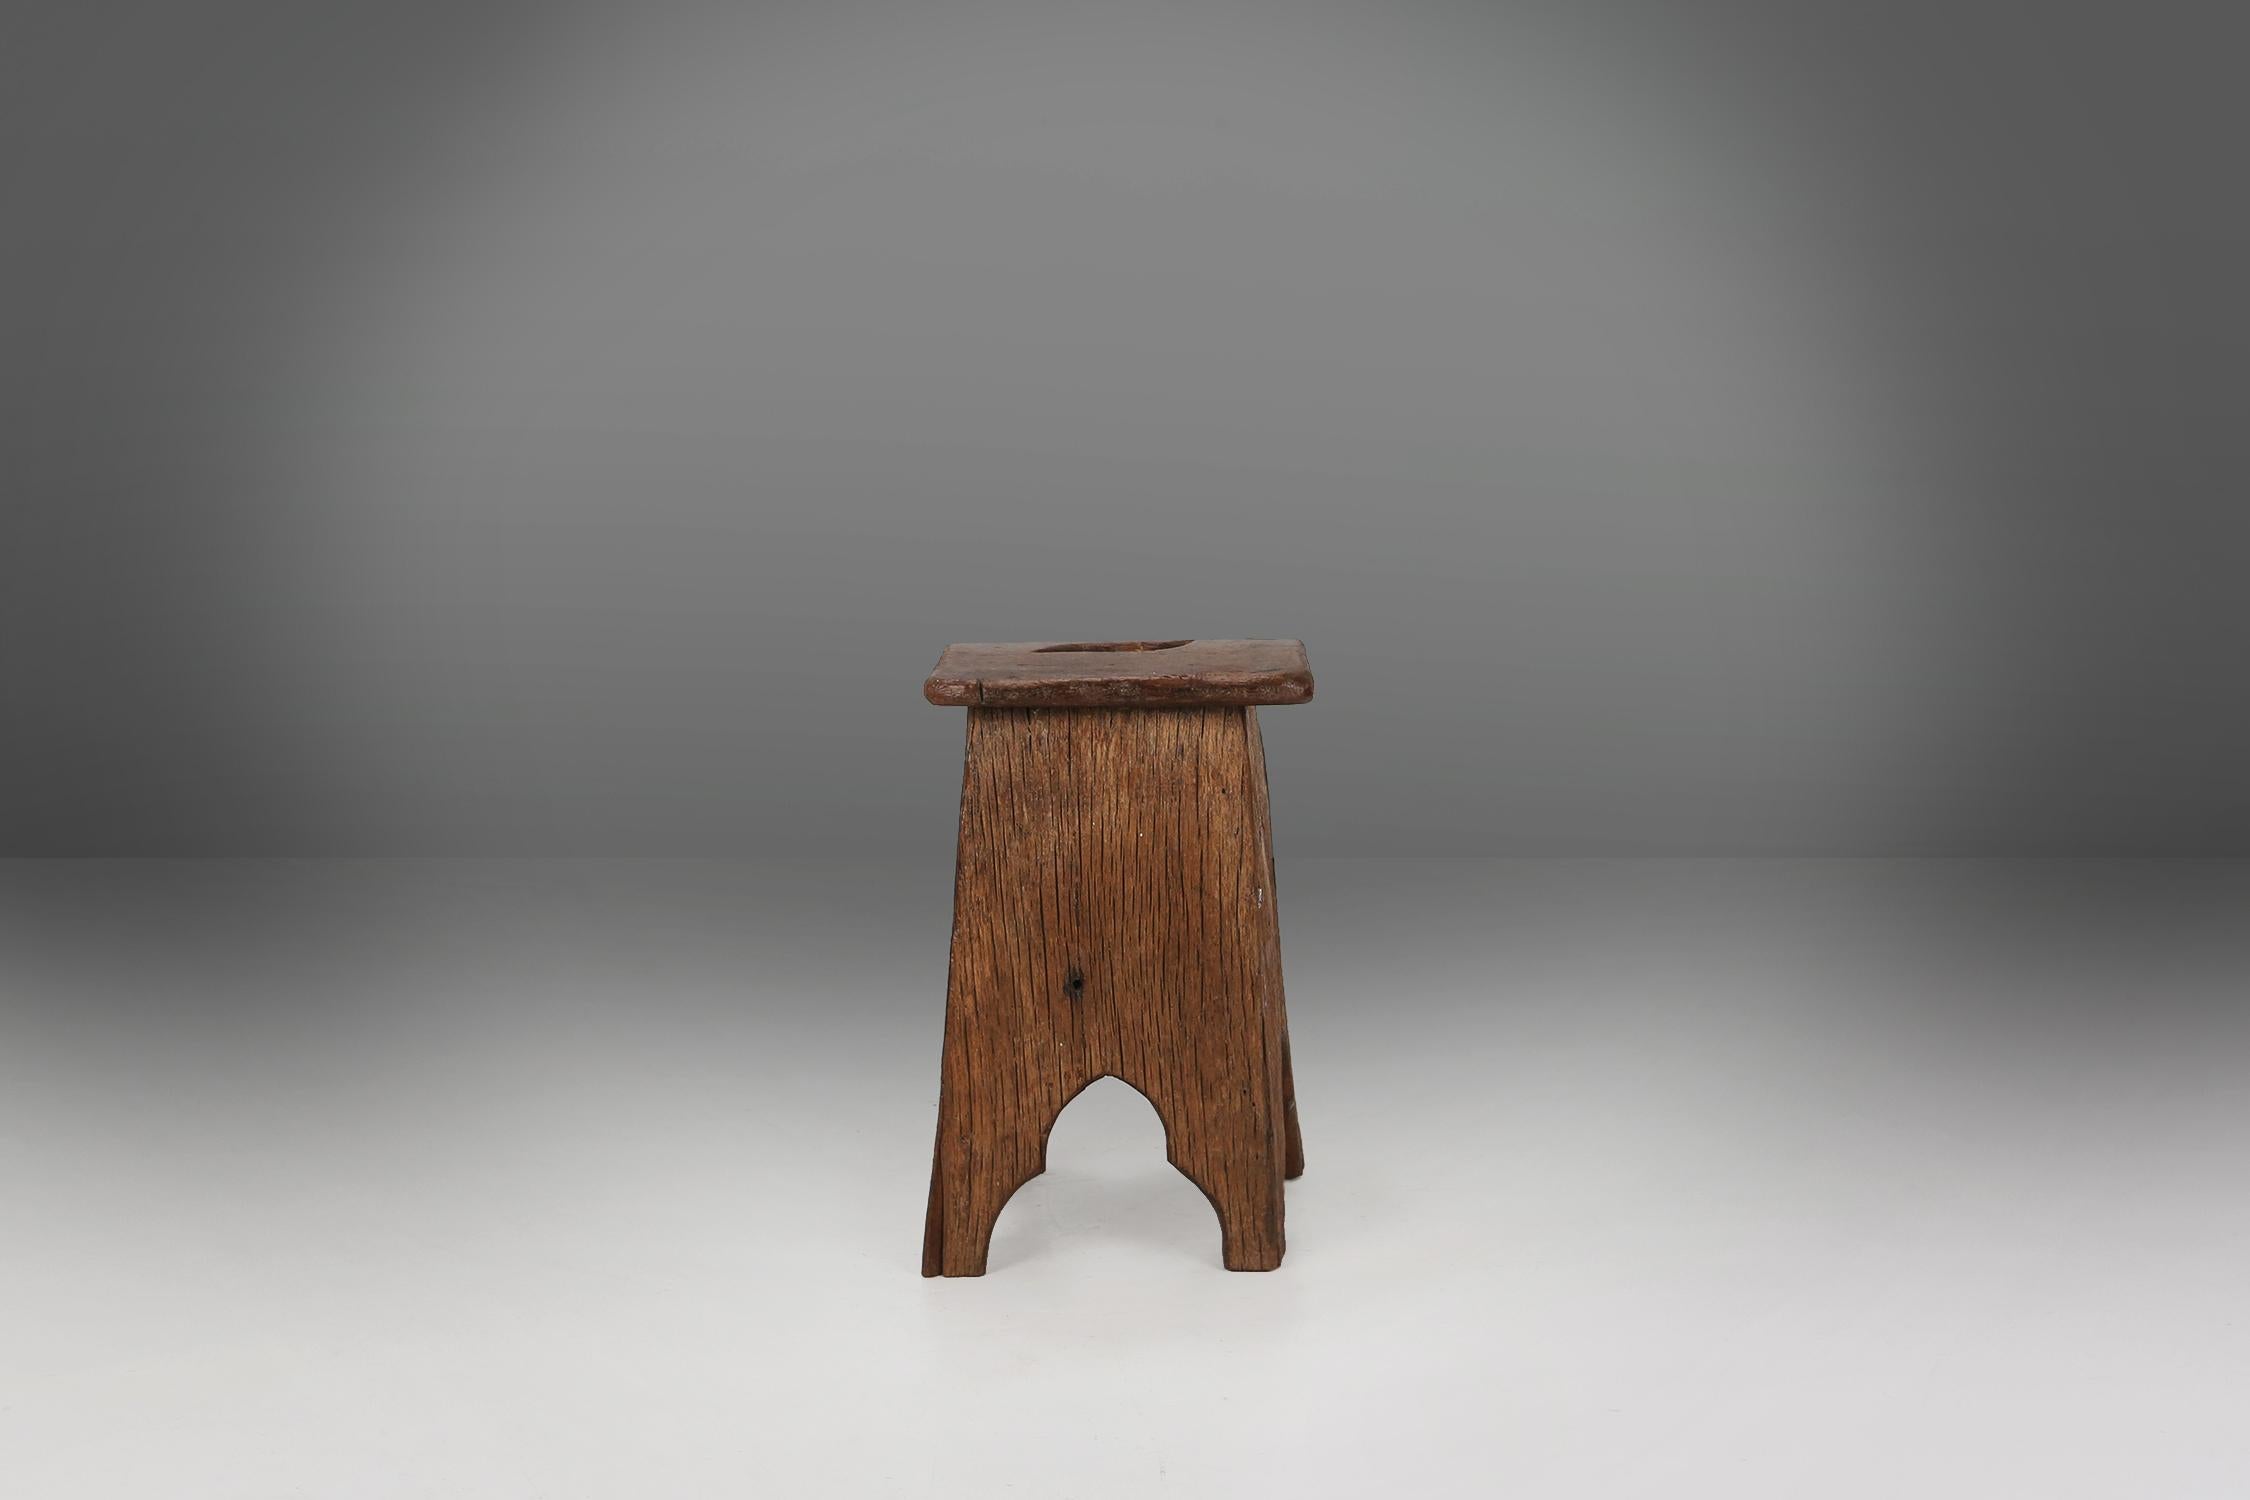 Tabouret rustique de style wabi sabi en bois massif fabriqué vers 1850.
Il y a de jolis détails dans les jambes et une poignée sur le dessus.